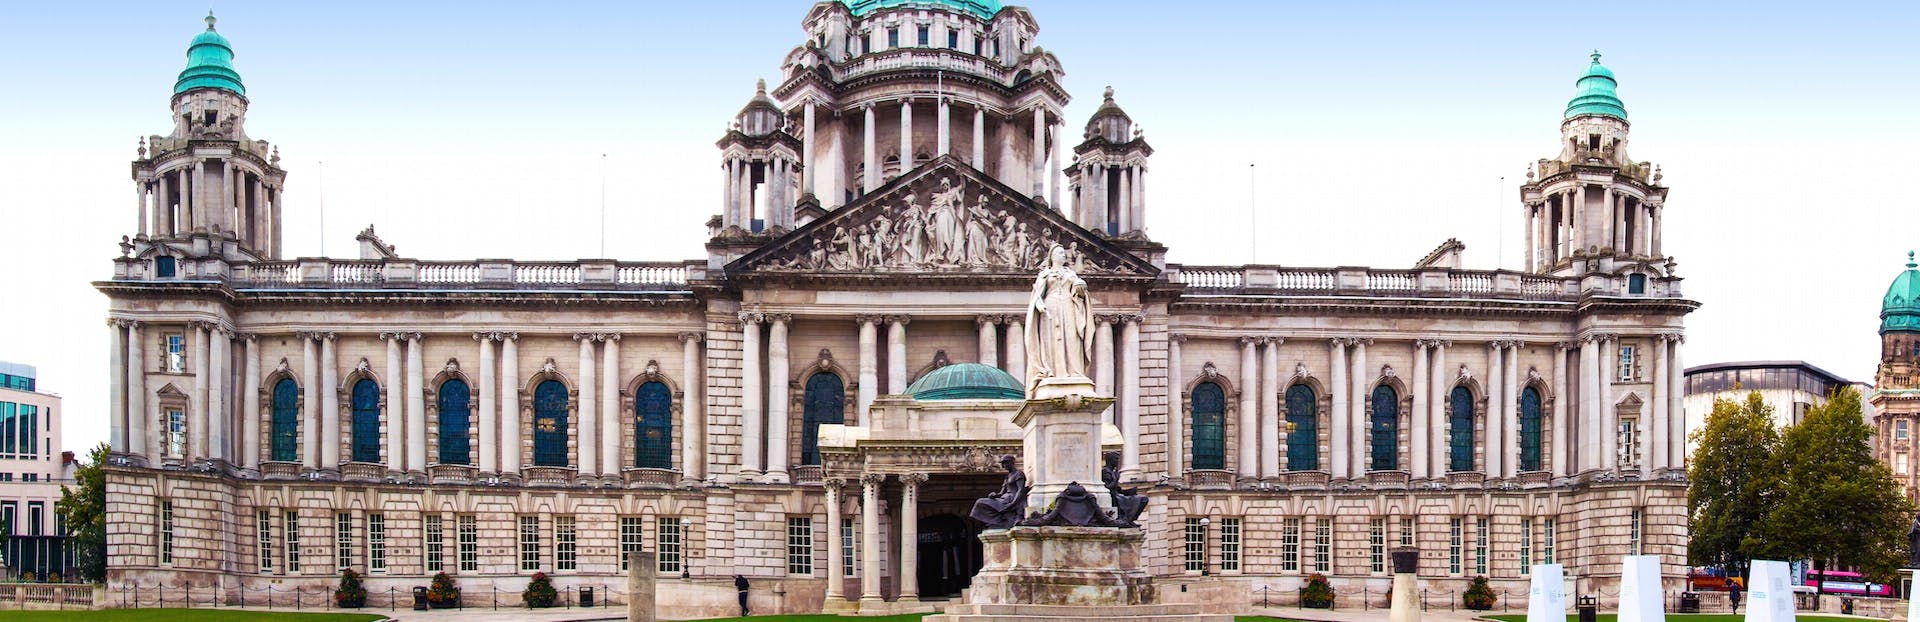 Entdecken Sie das Beste von Belfast bei einer selbstgeführten Audiotour